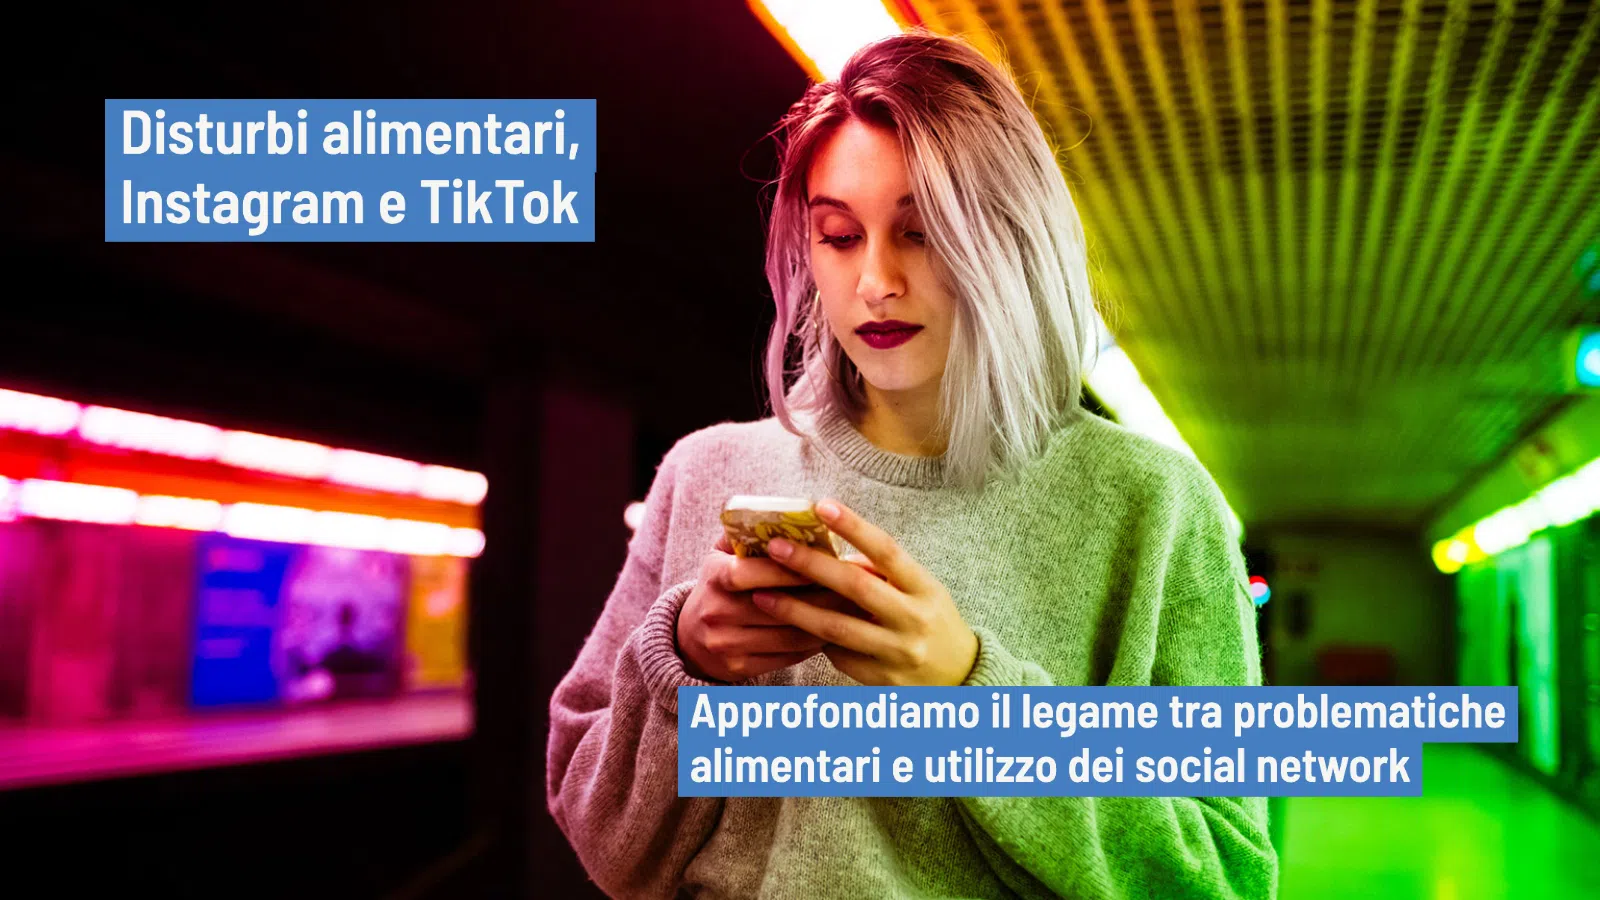 Disturbi alimentari: Instagram e TikTok come possibili fattori perpetuanti